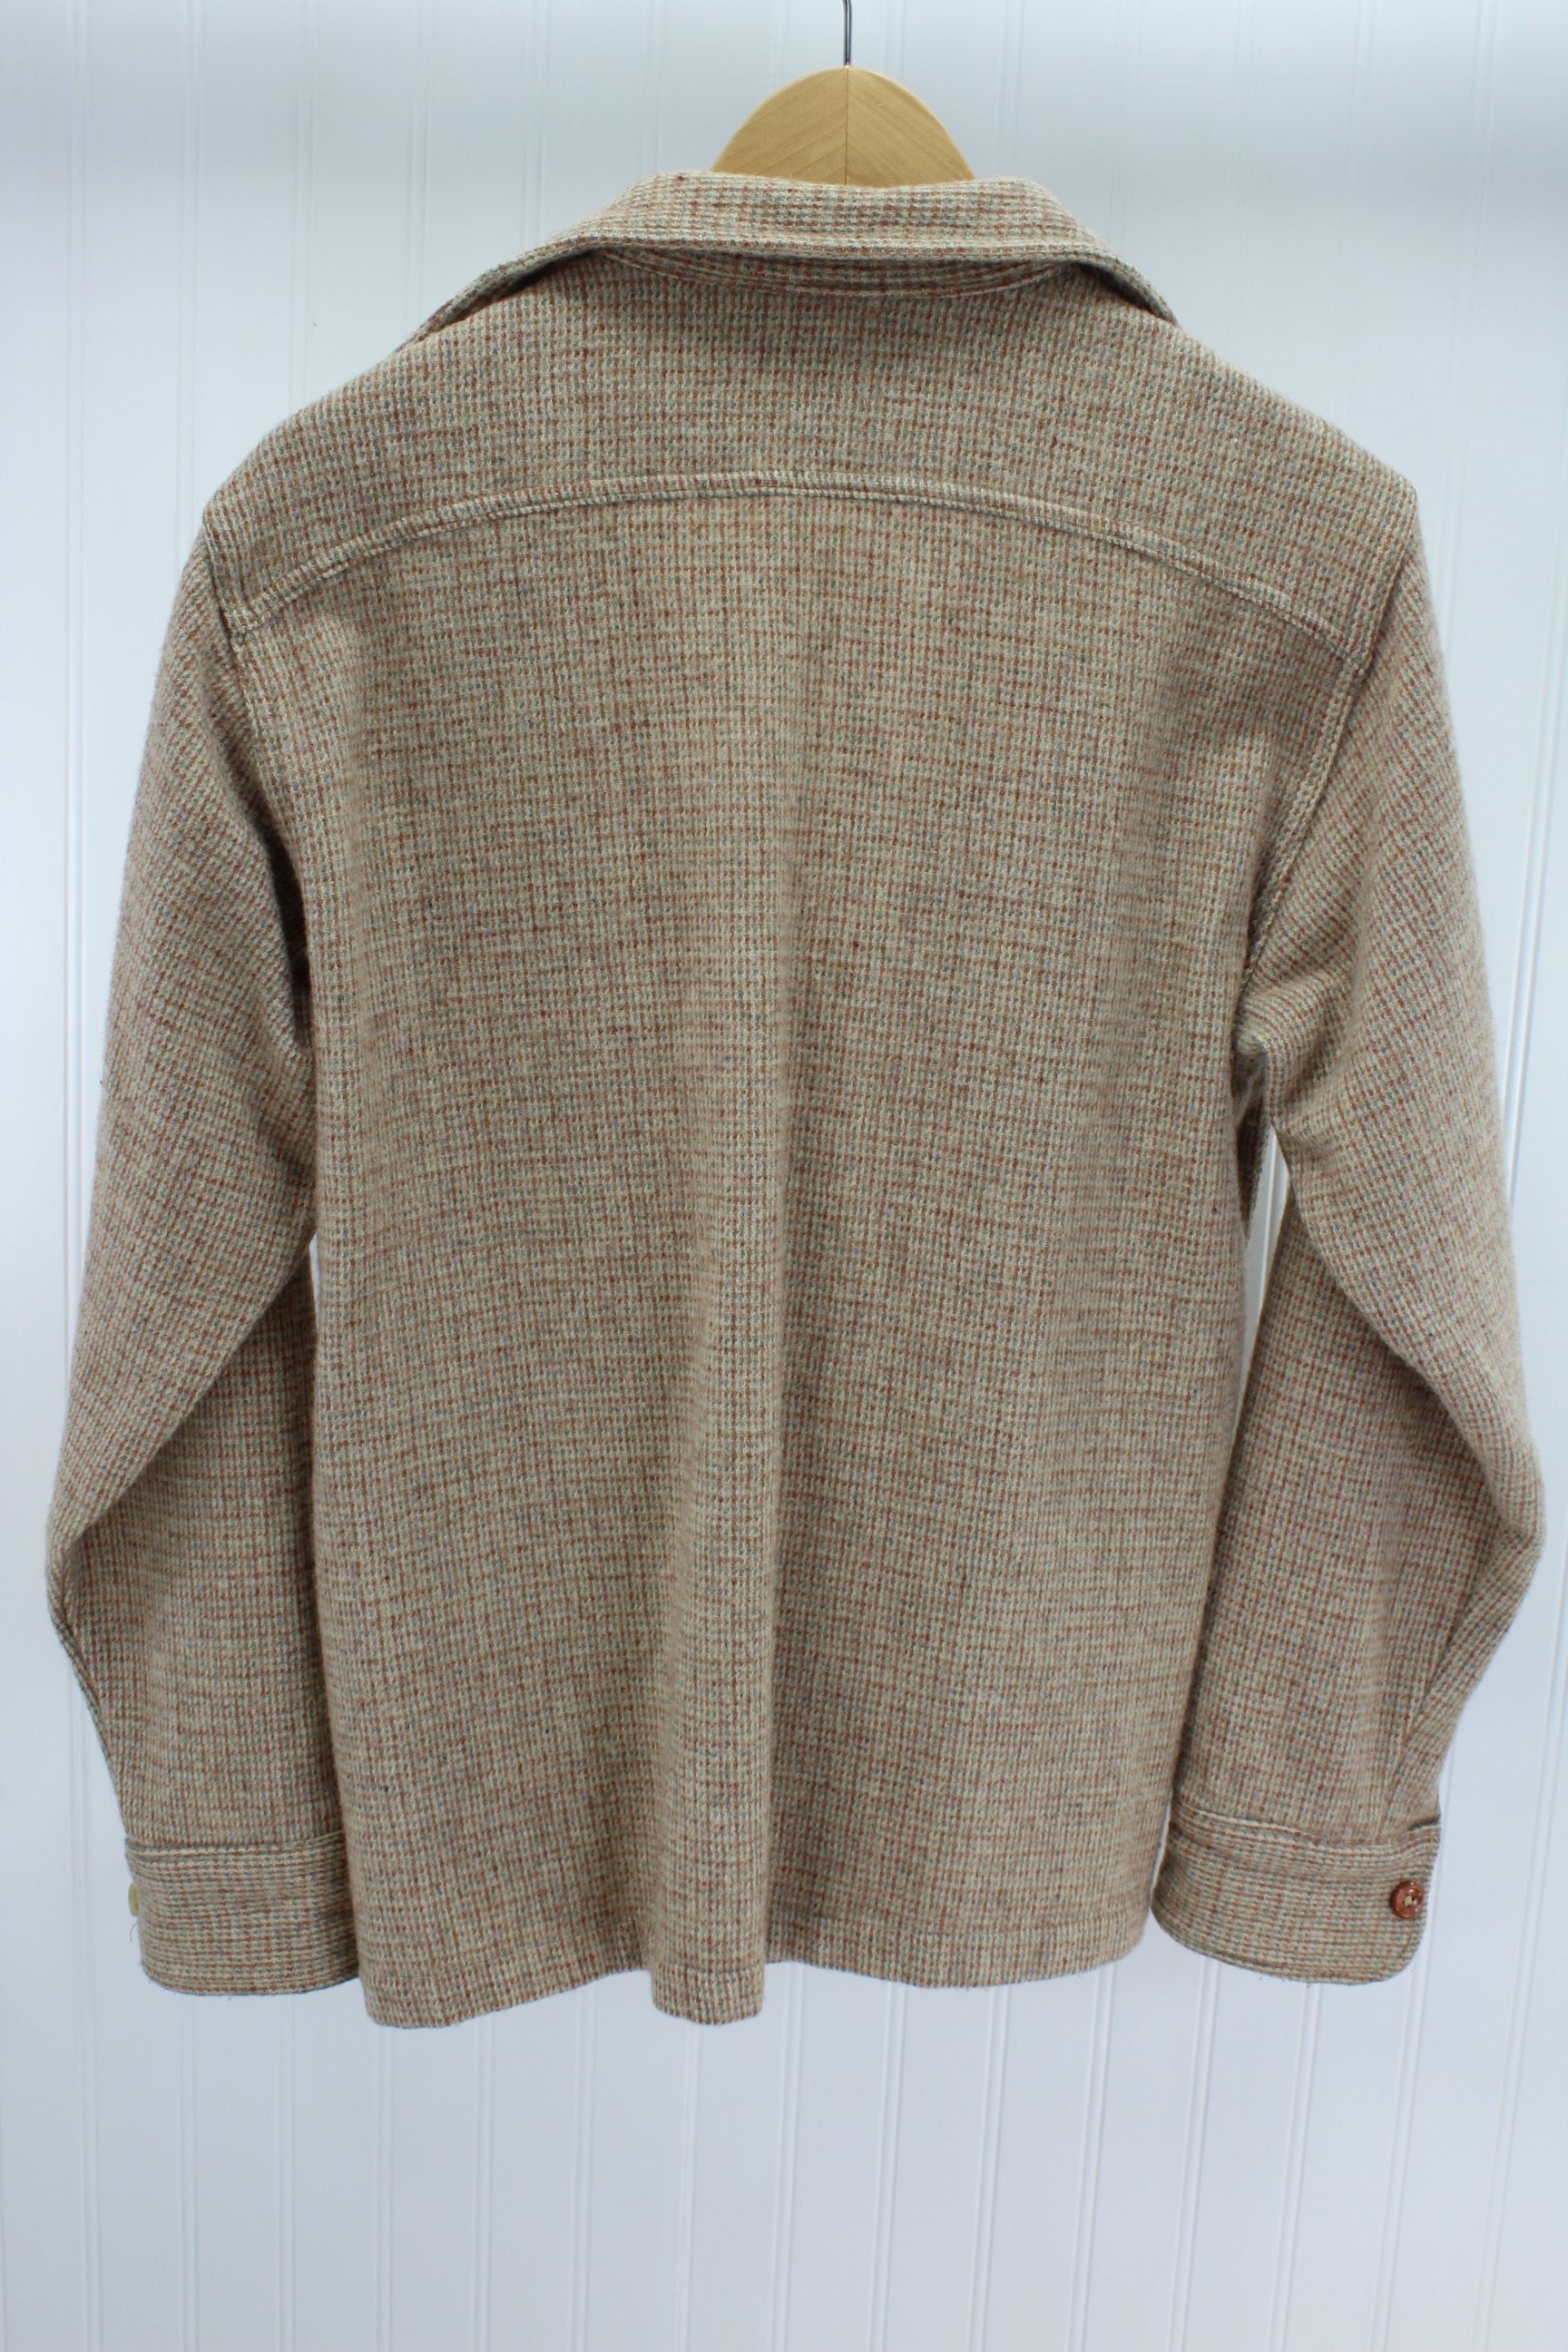 Woolrich Wool Shirt Boys XL Tweed Browns Greys Unisex OK Nice Warm geometric